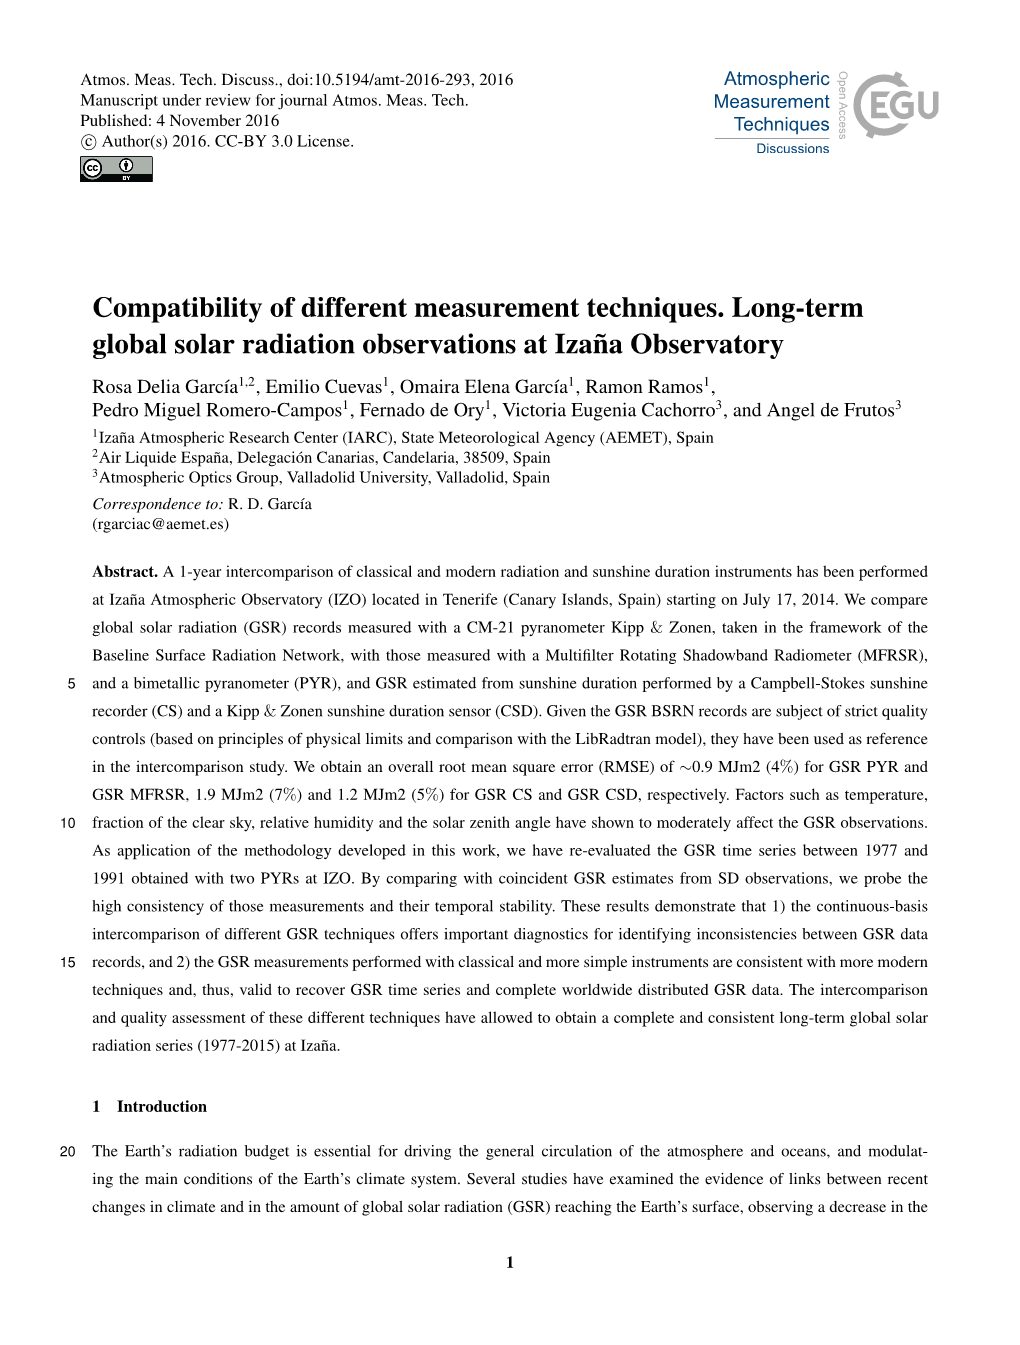 Compatibility of Different Measurement Techniques. Long-Term Global Solar